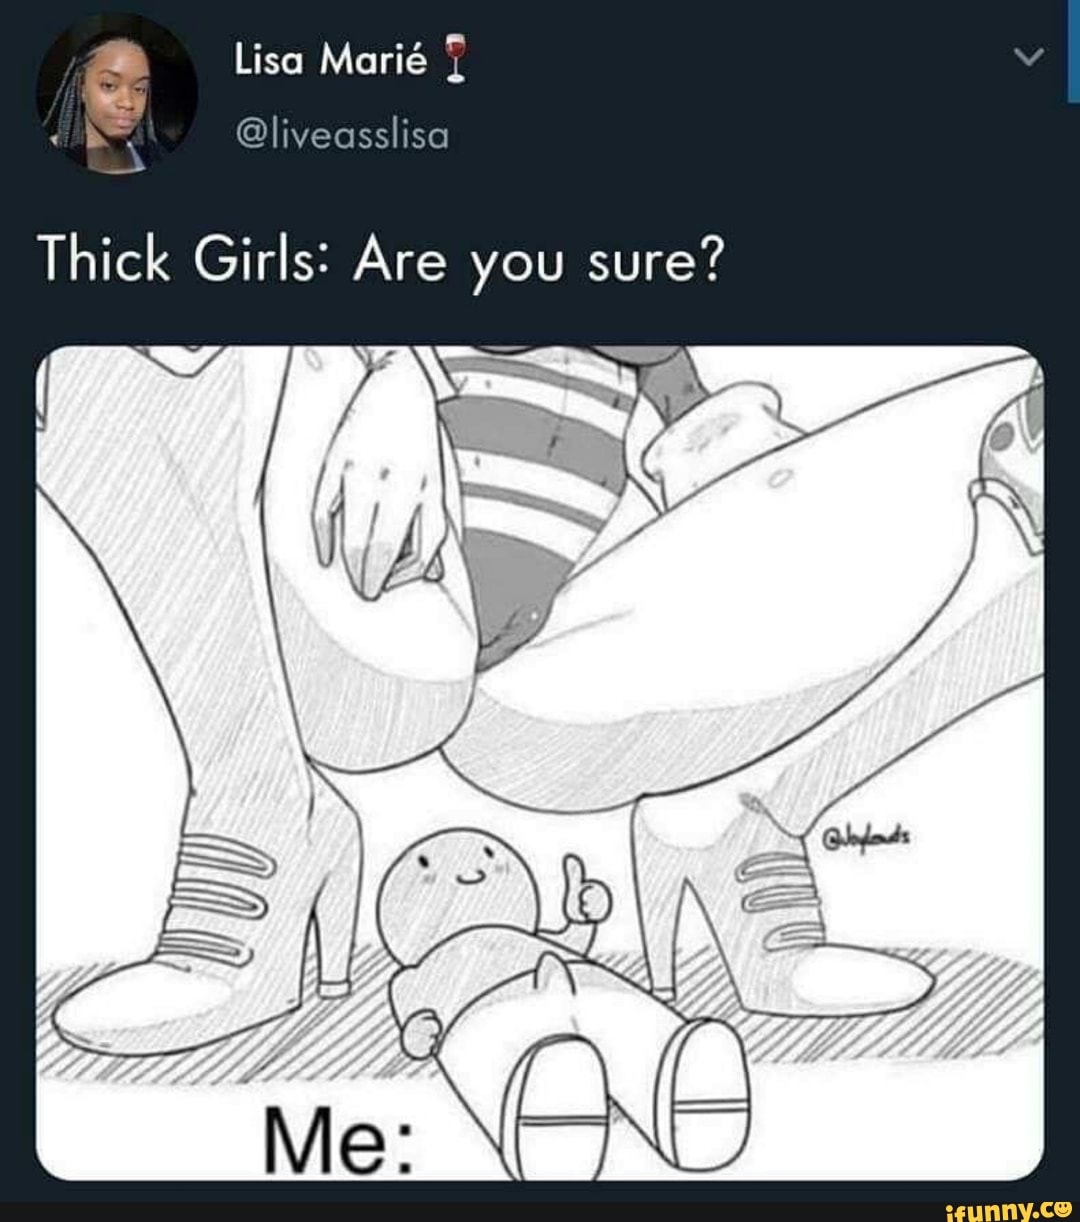 Thick Girls